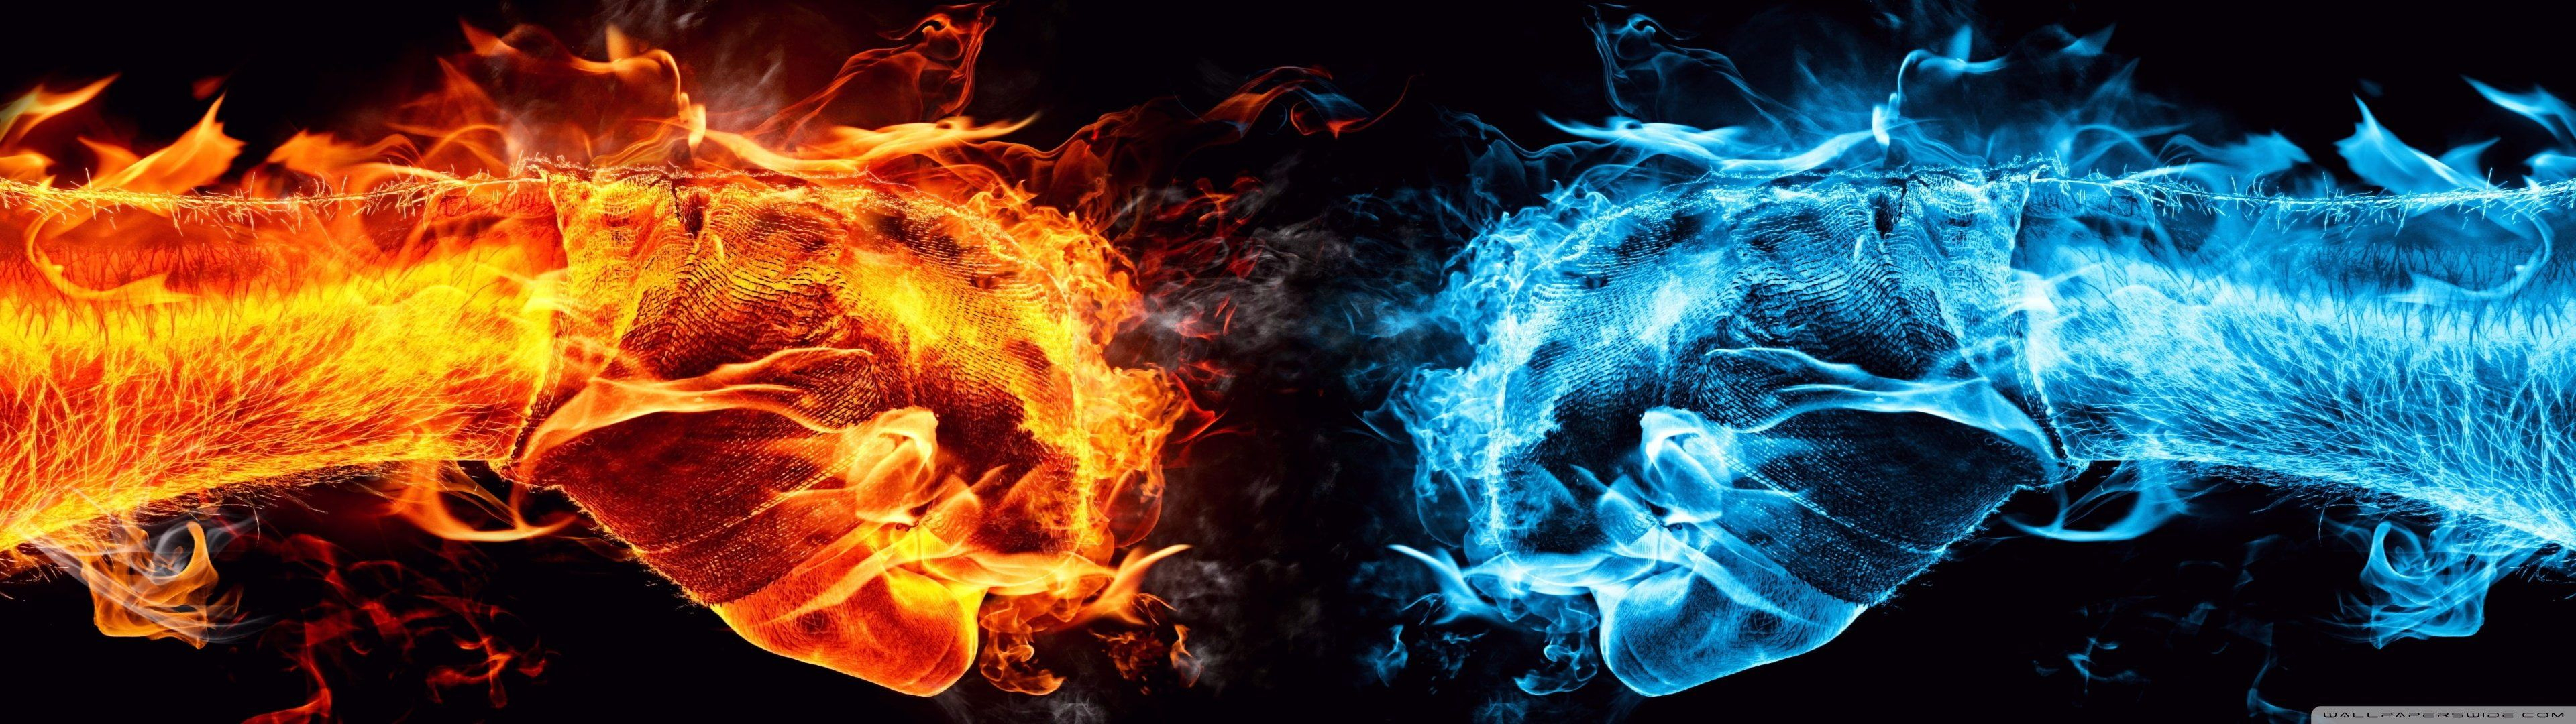 3840x1080 flame fist wallpaper #bleu #blue #dual #feu #fire #flame #flamme #monitor #multi #multiple #orange #screen #4&acirc;&#128;&brvbar; | Wallpaper backgrounds, Hand illustration, Wallpaper